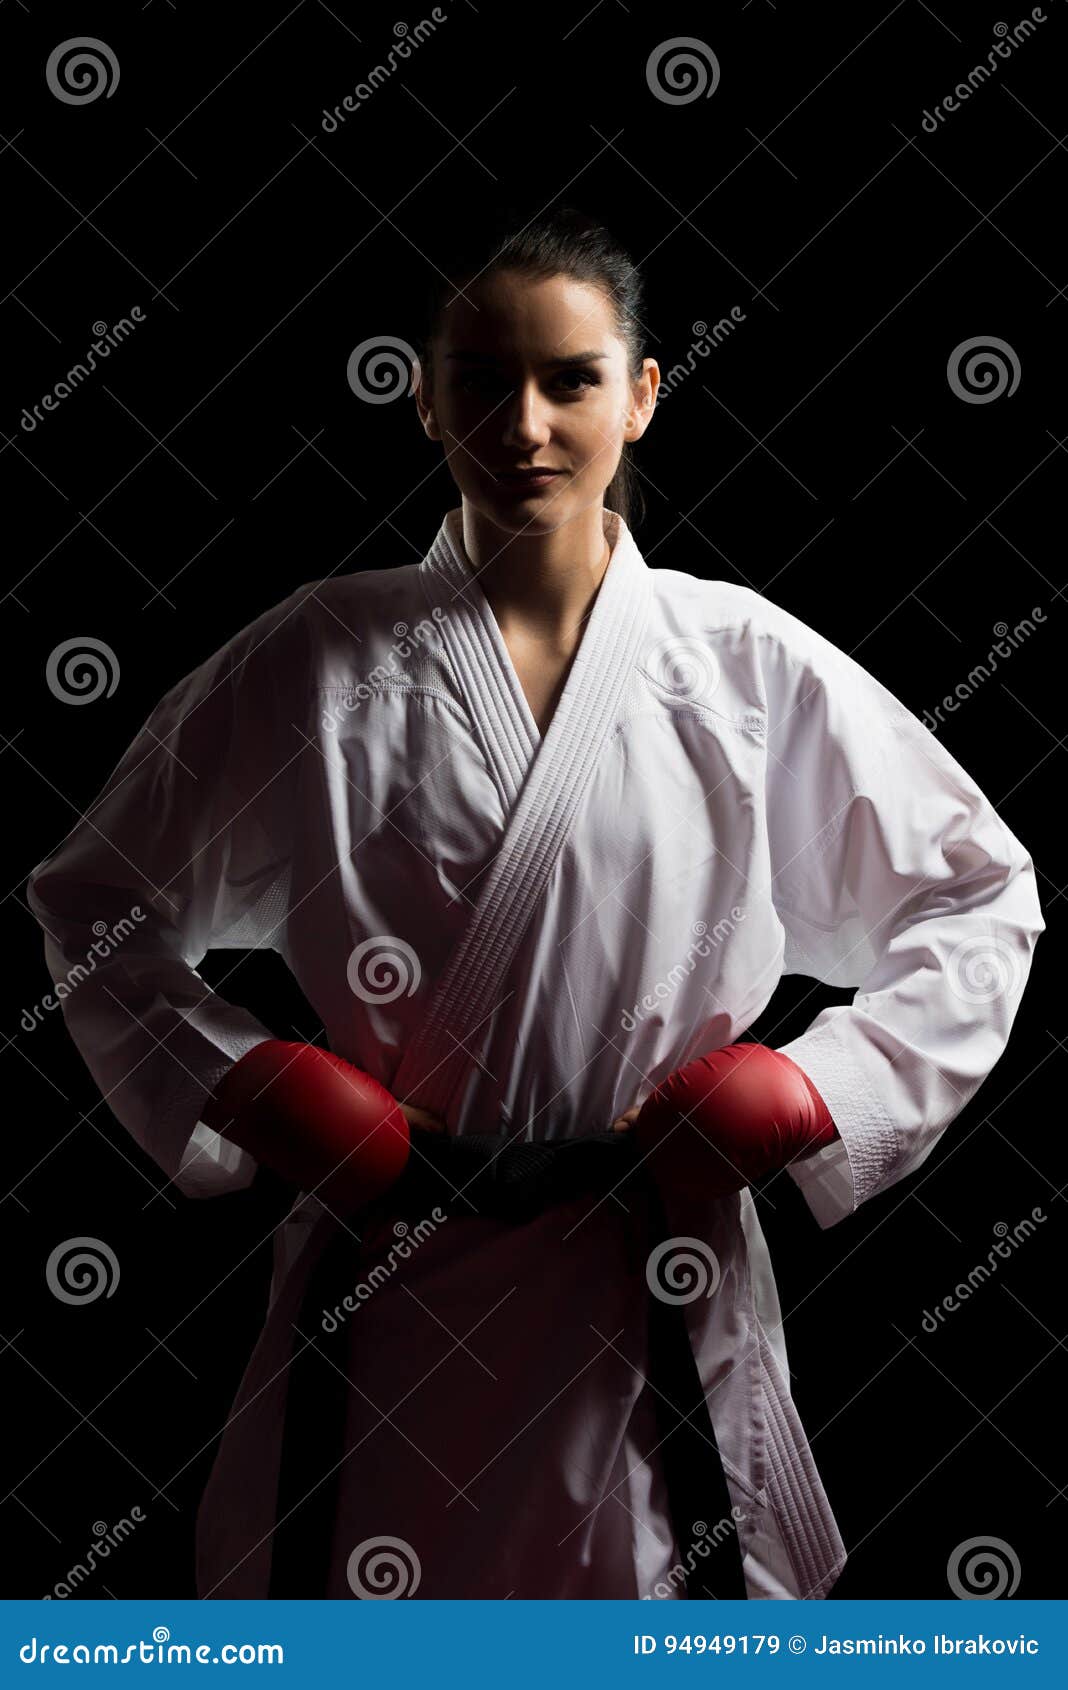 Portrait Taekwondo Fighter Pose Isolated on Black Background Stock ...